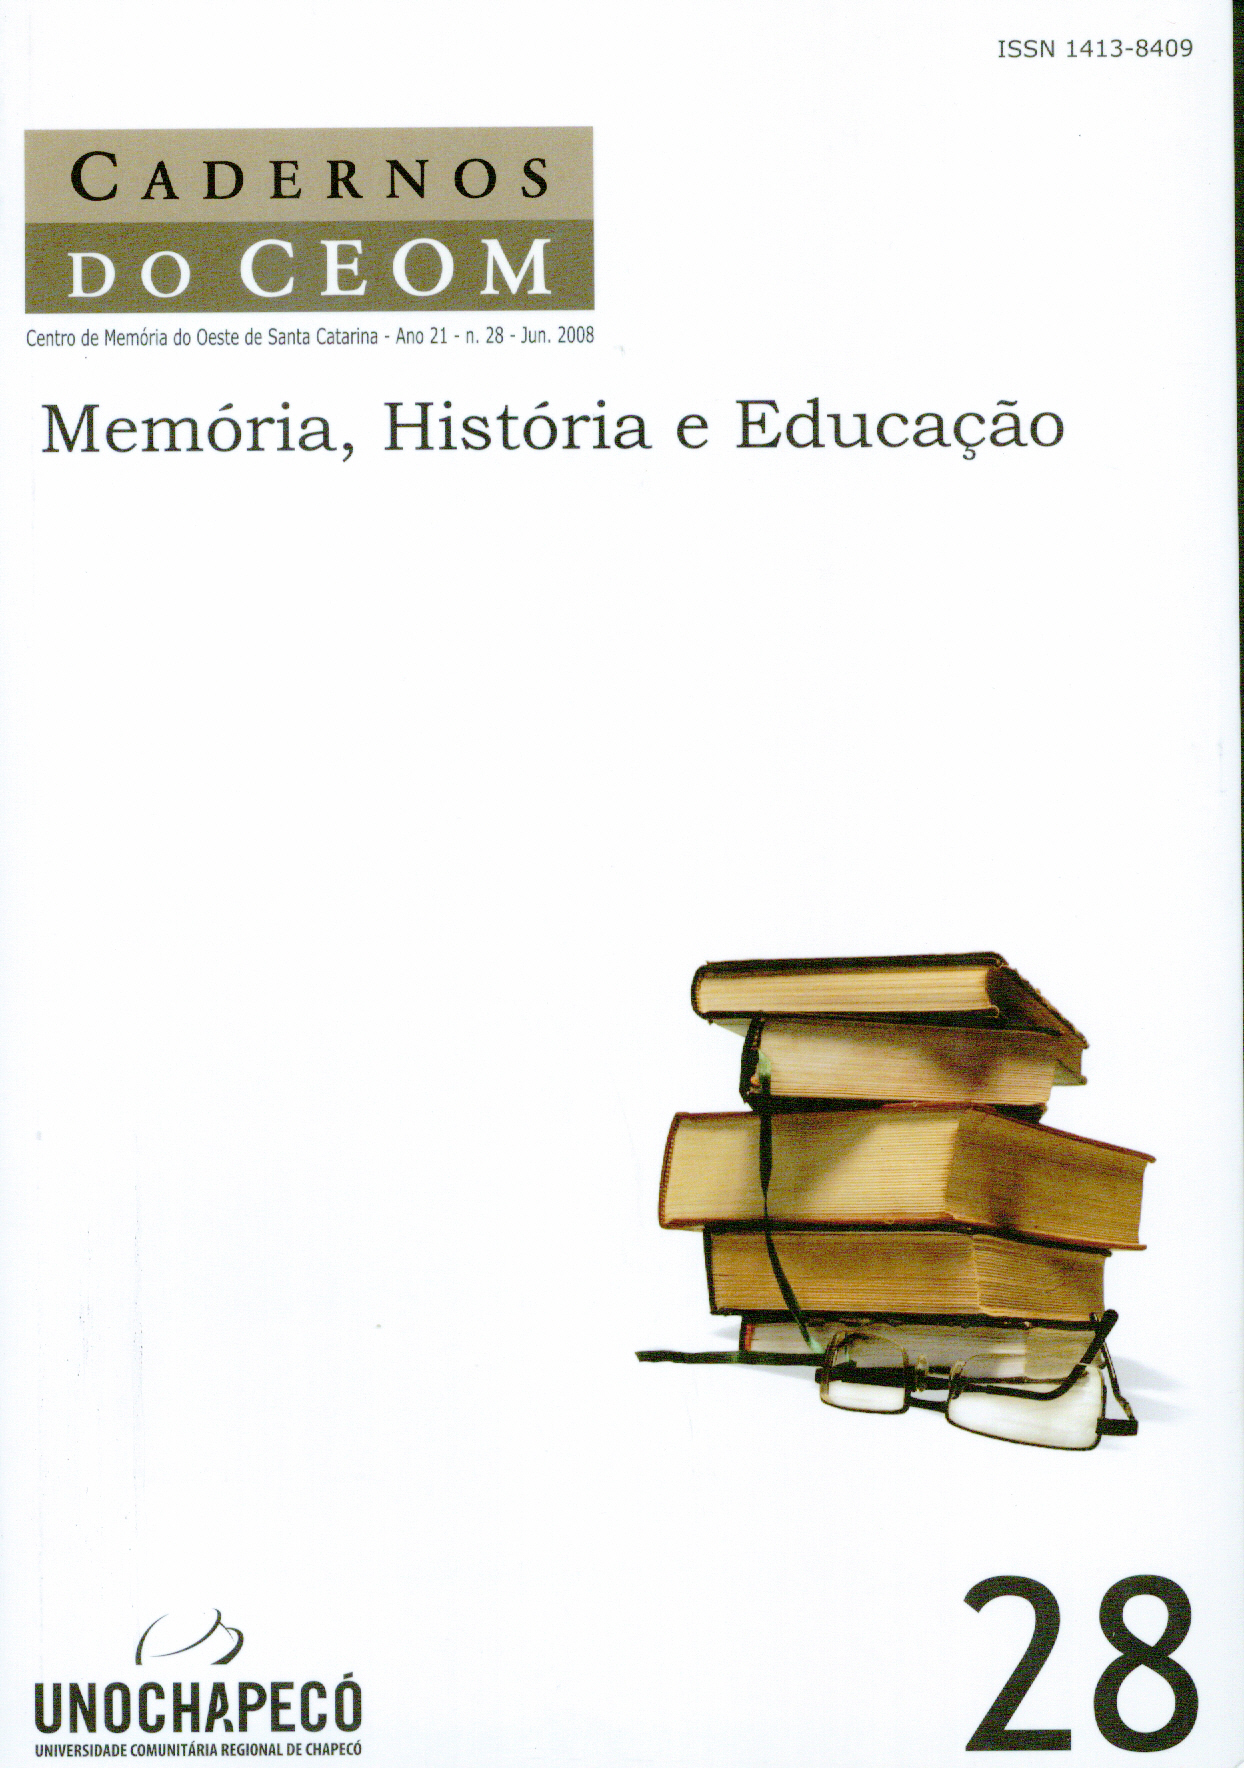 					View Vol. 21 No. 28: Memória, História e Educação
				